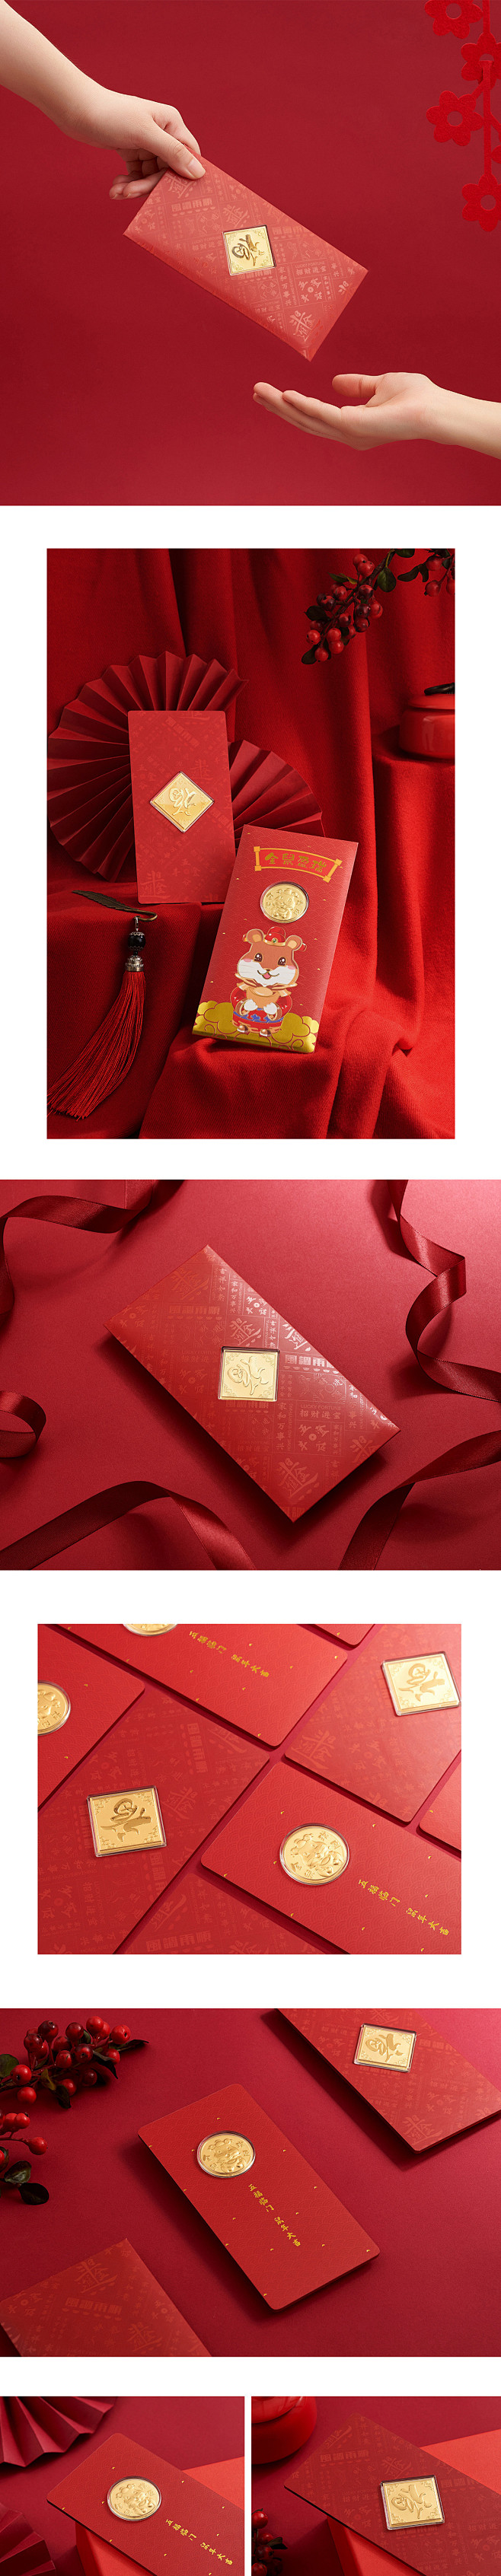 新年福袋组合和金币摄影设计